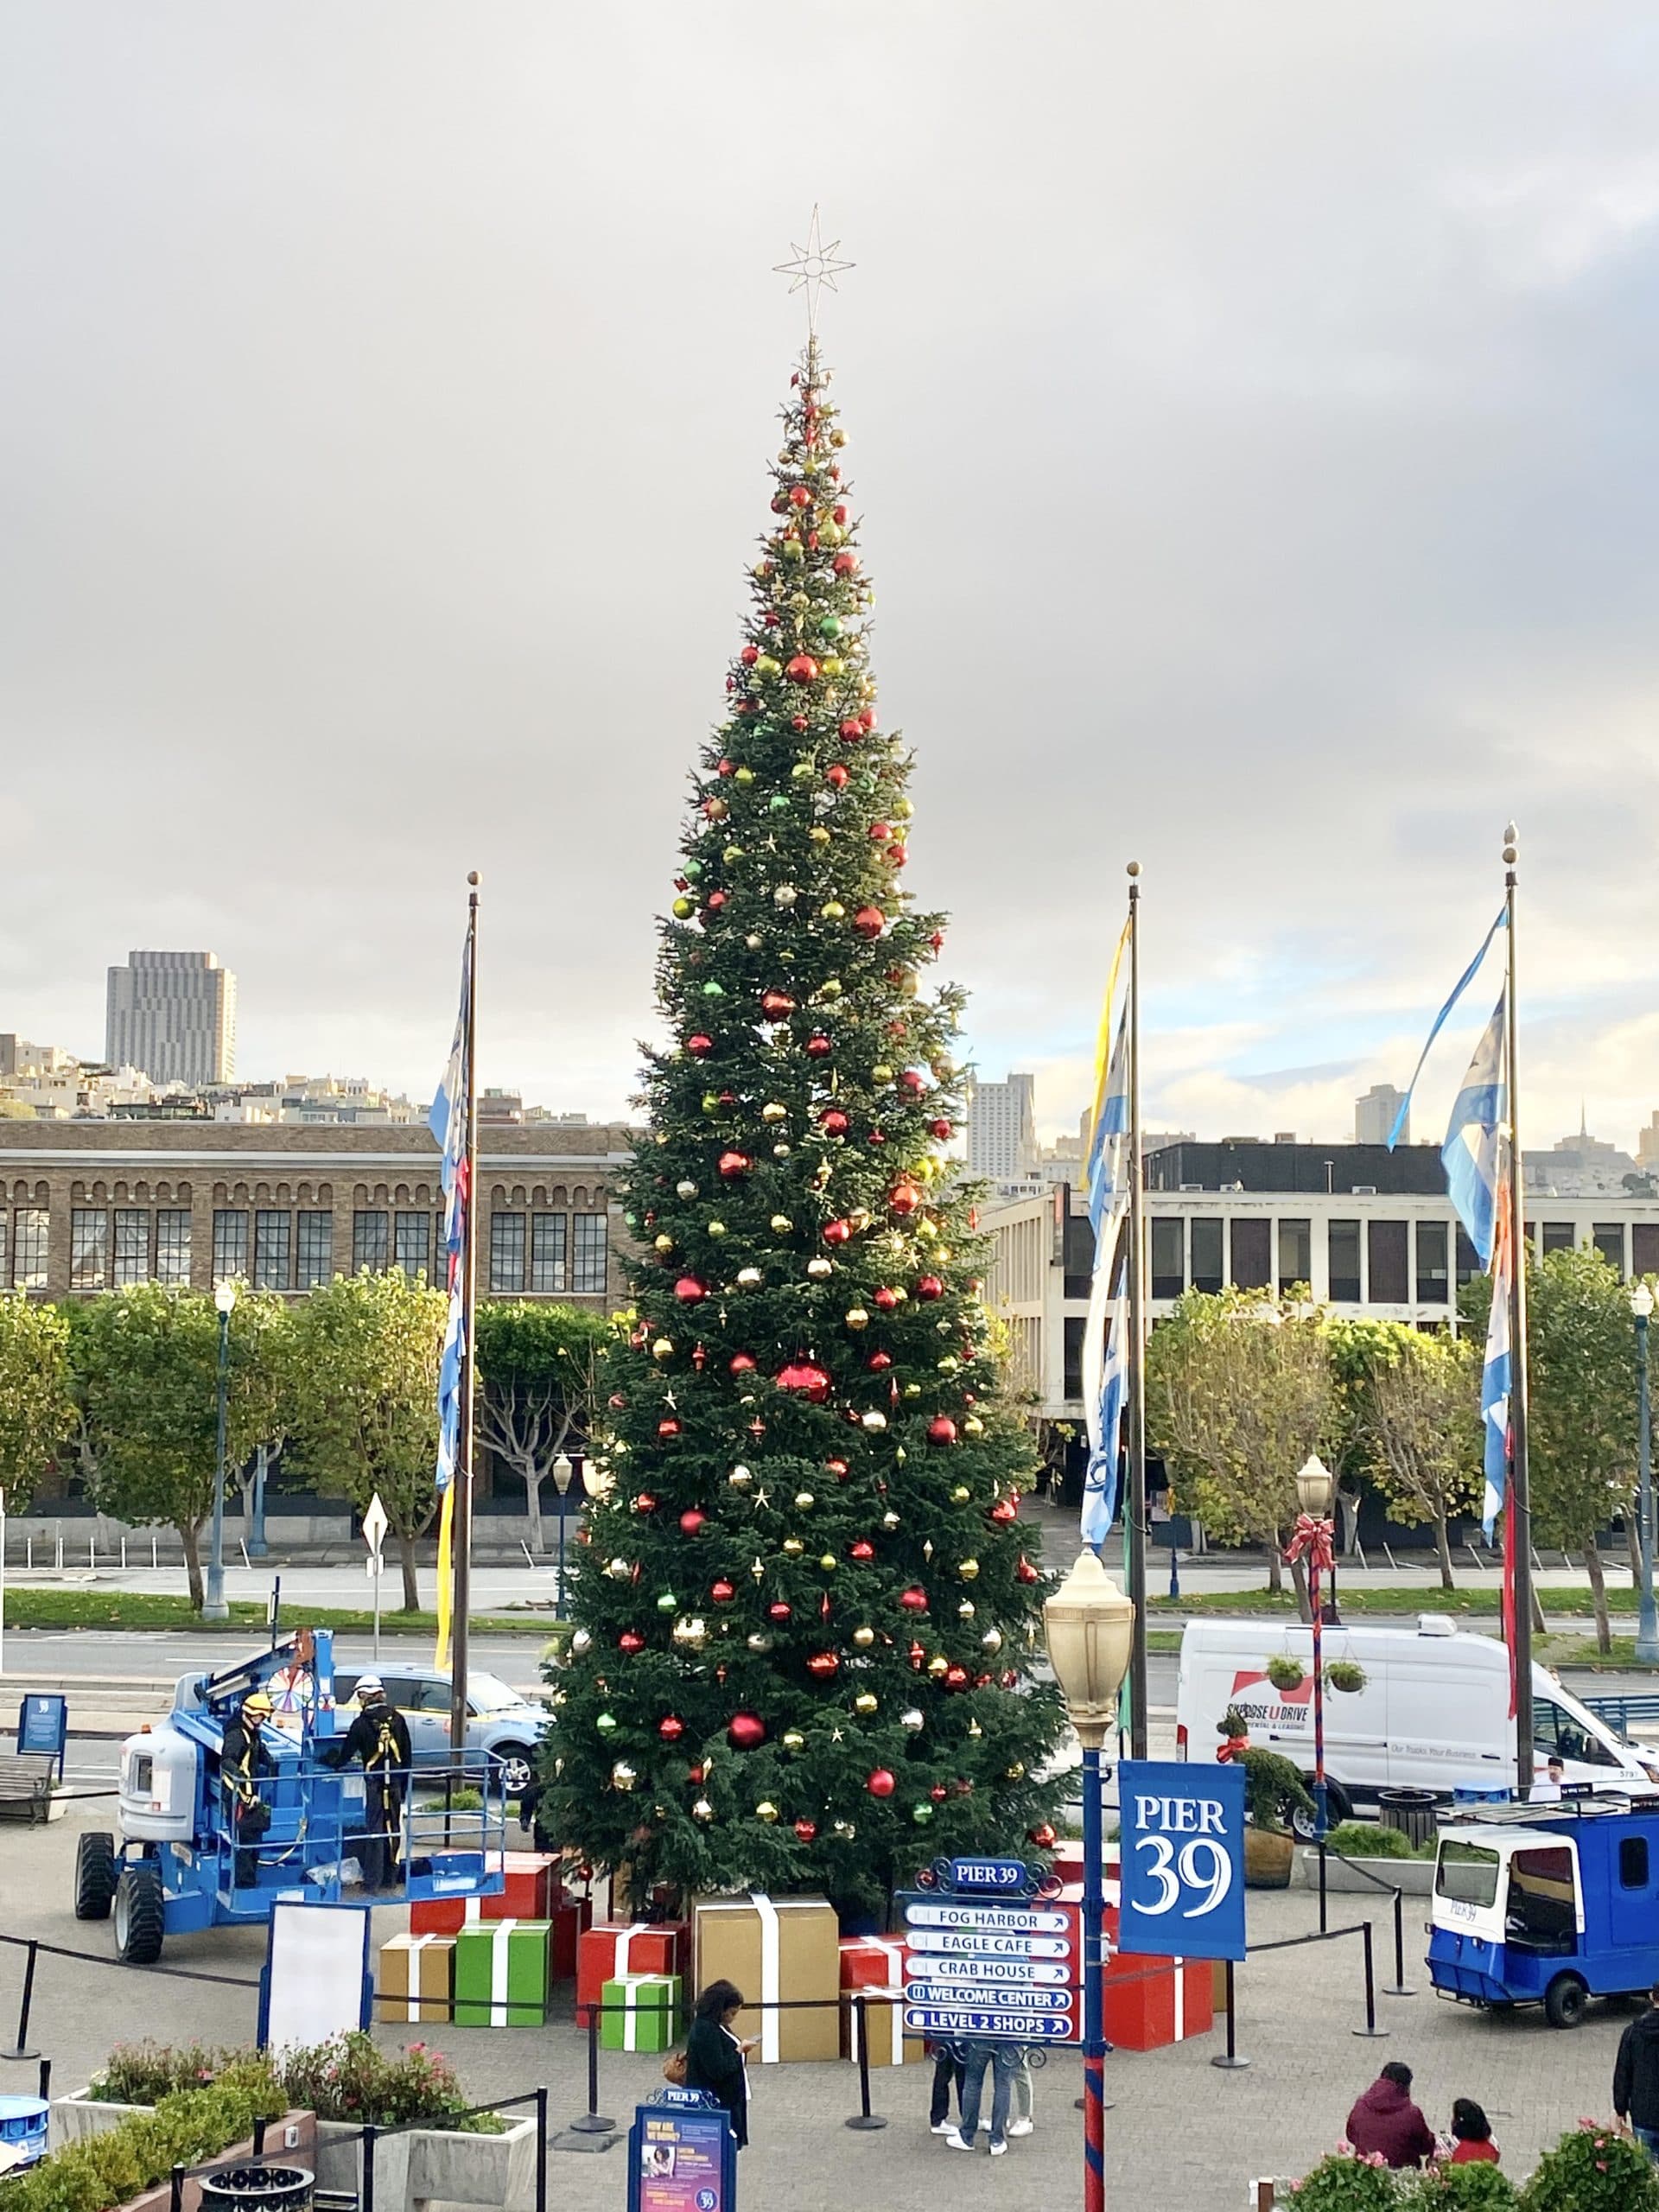 Pier 39 Christmas Tree